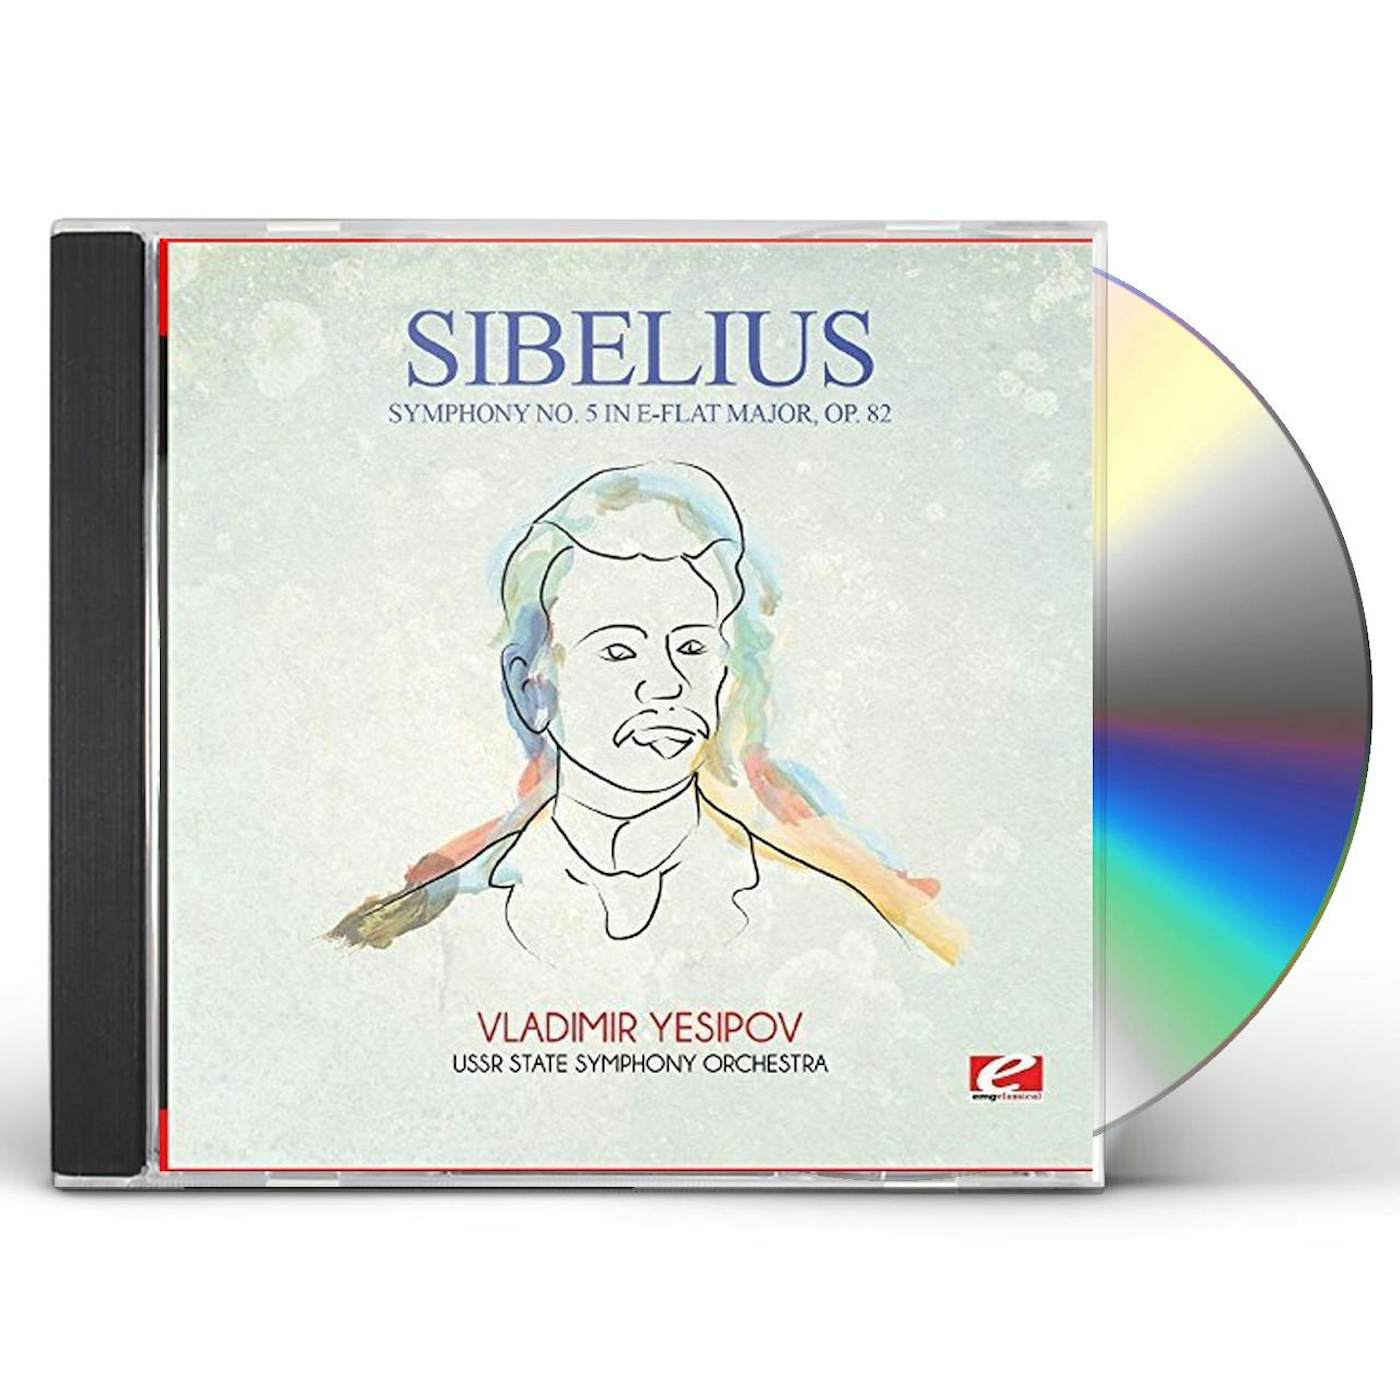 Sibelius SYMPHONY NO. 5 IN E-FLAT MAJOR OP. 82 CD